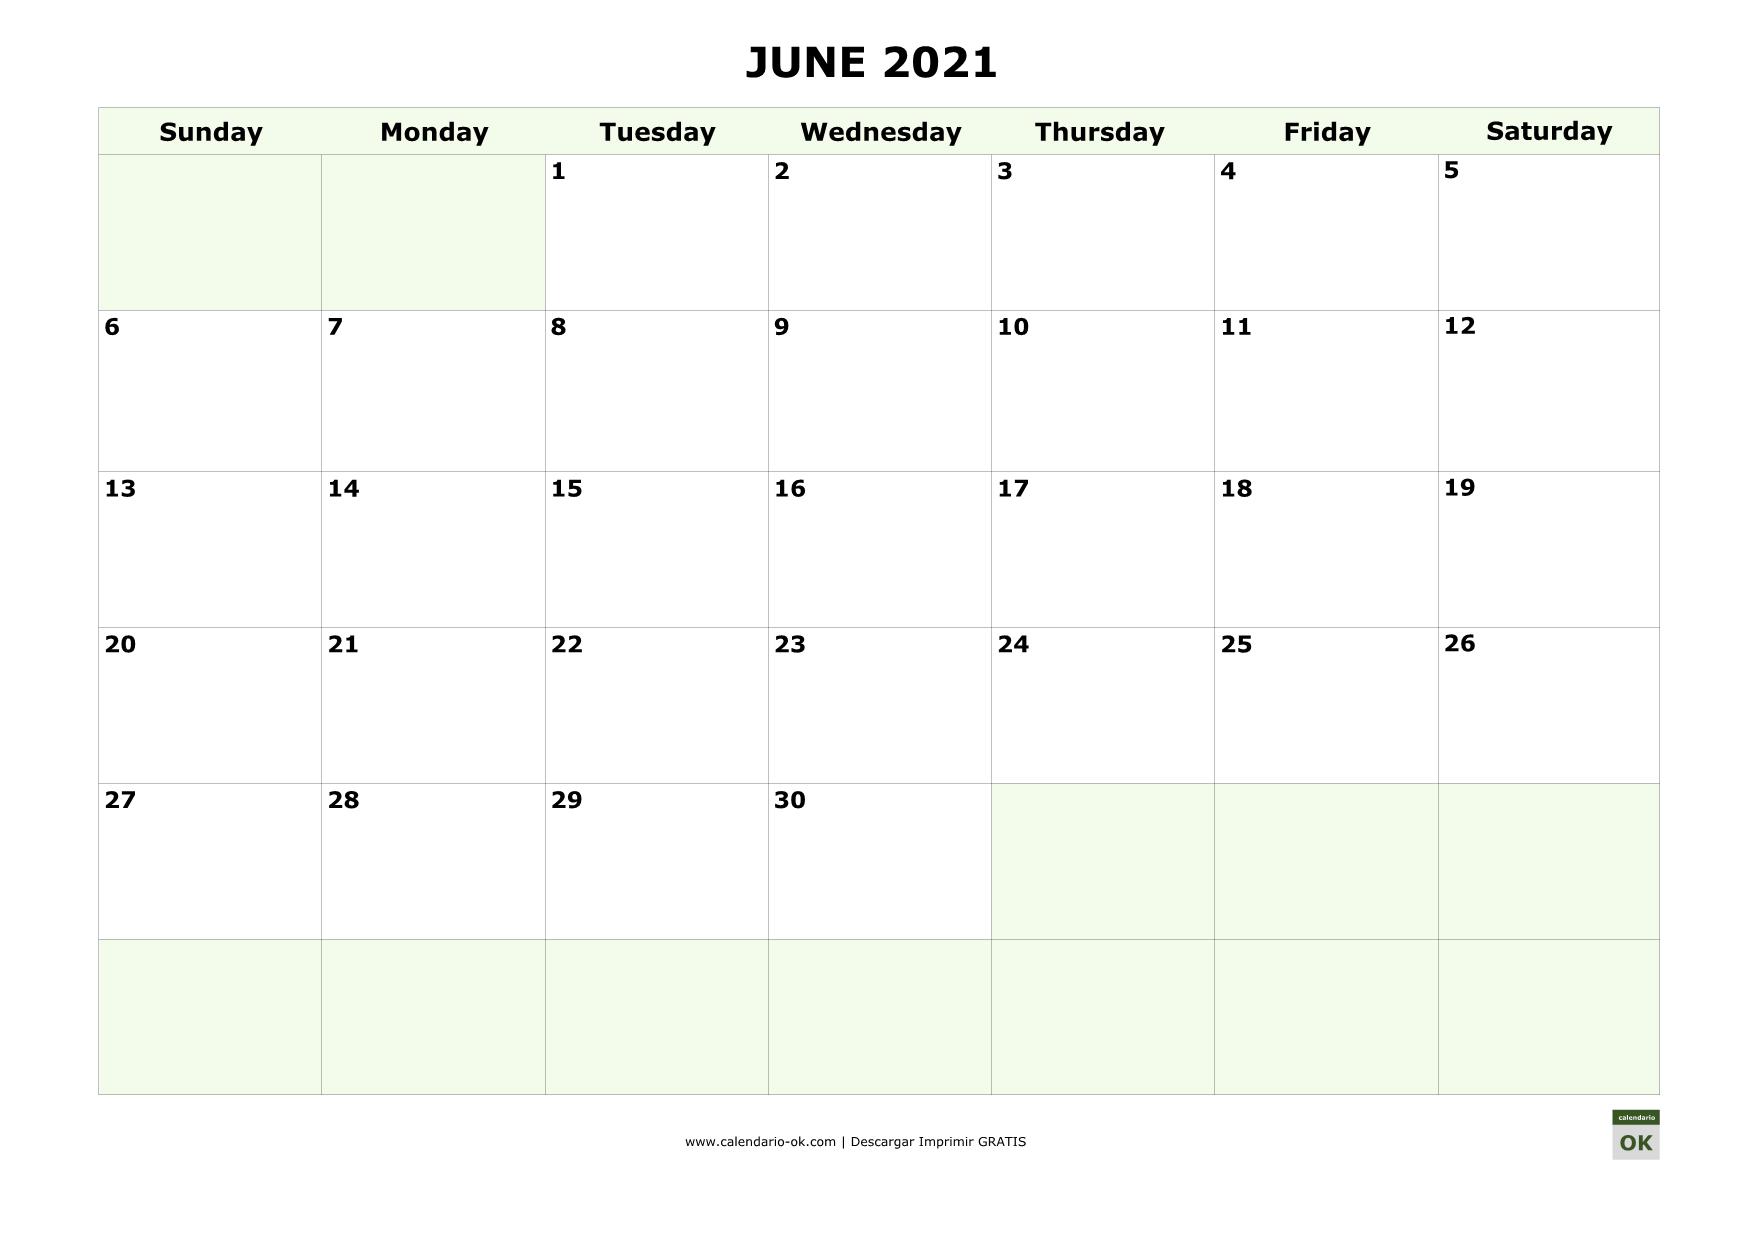 JUNIO 2021 calendario en INGLES empieza por DOMINGO